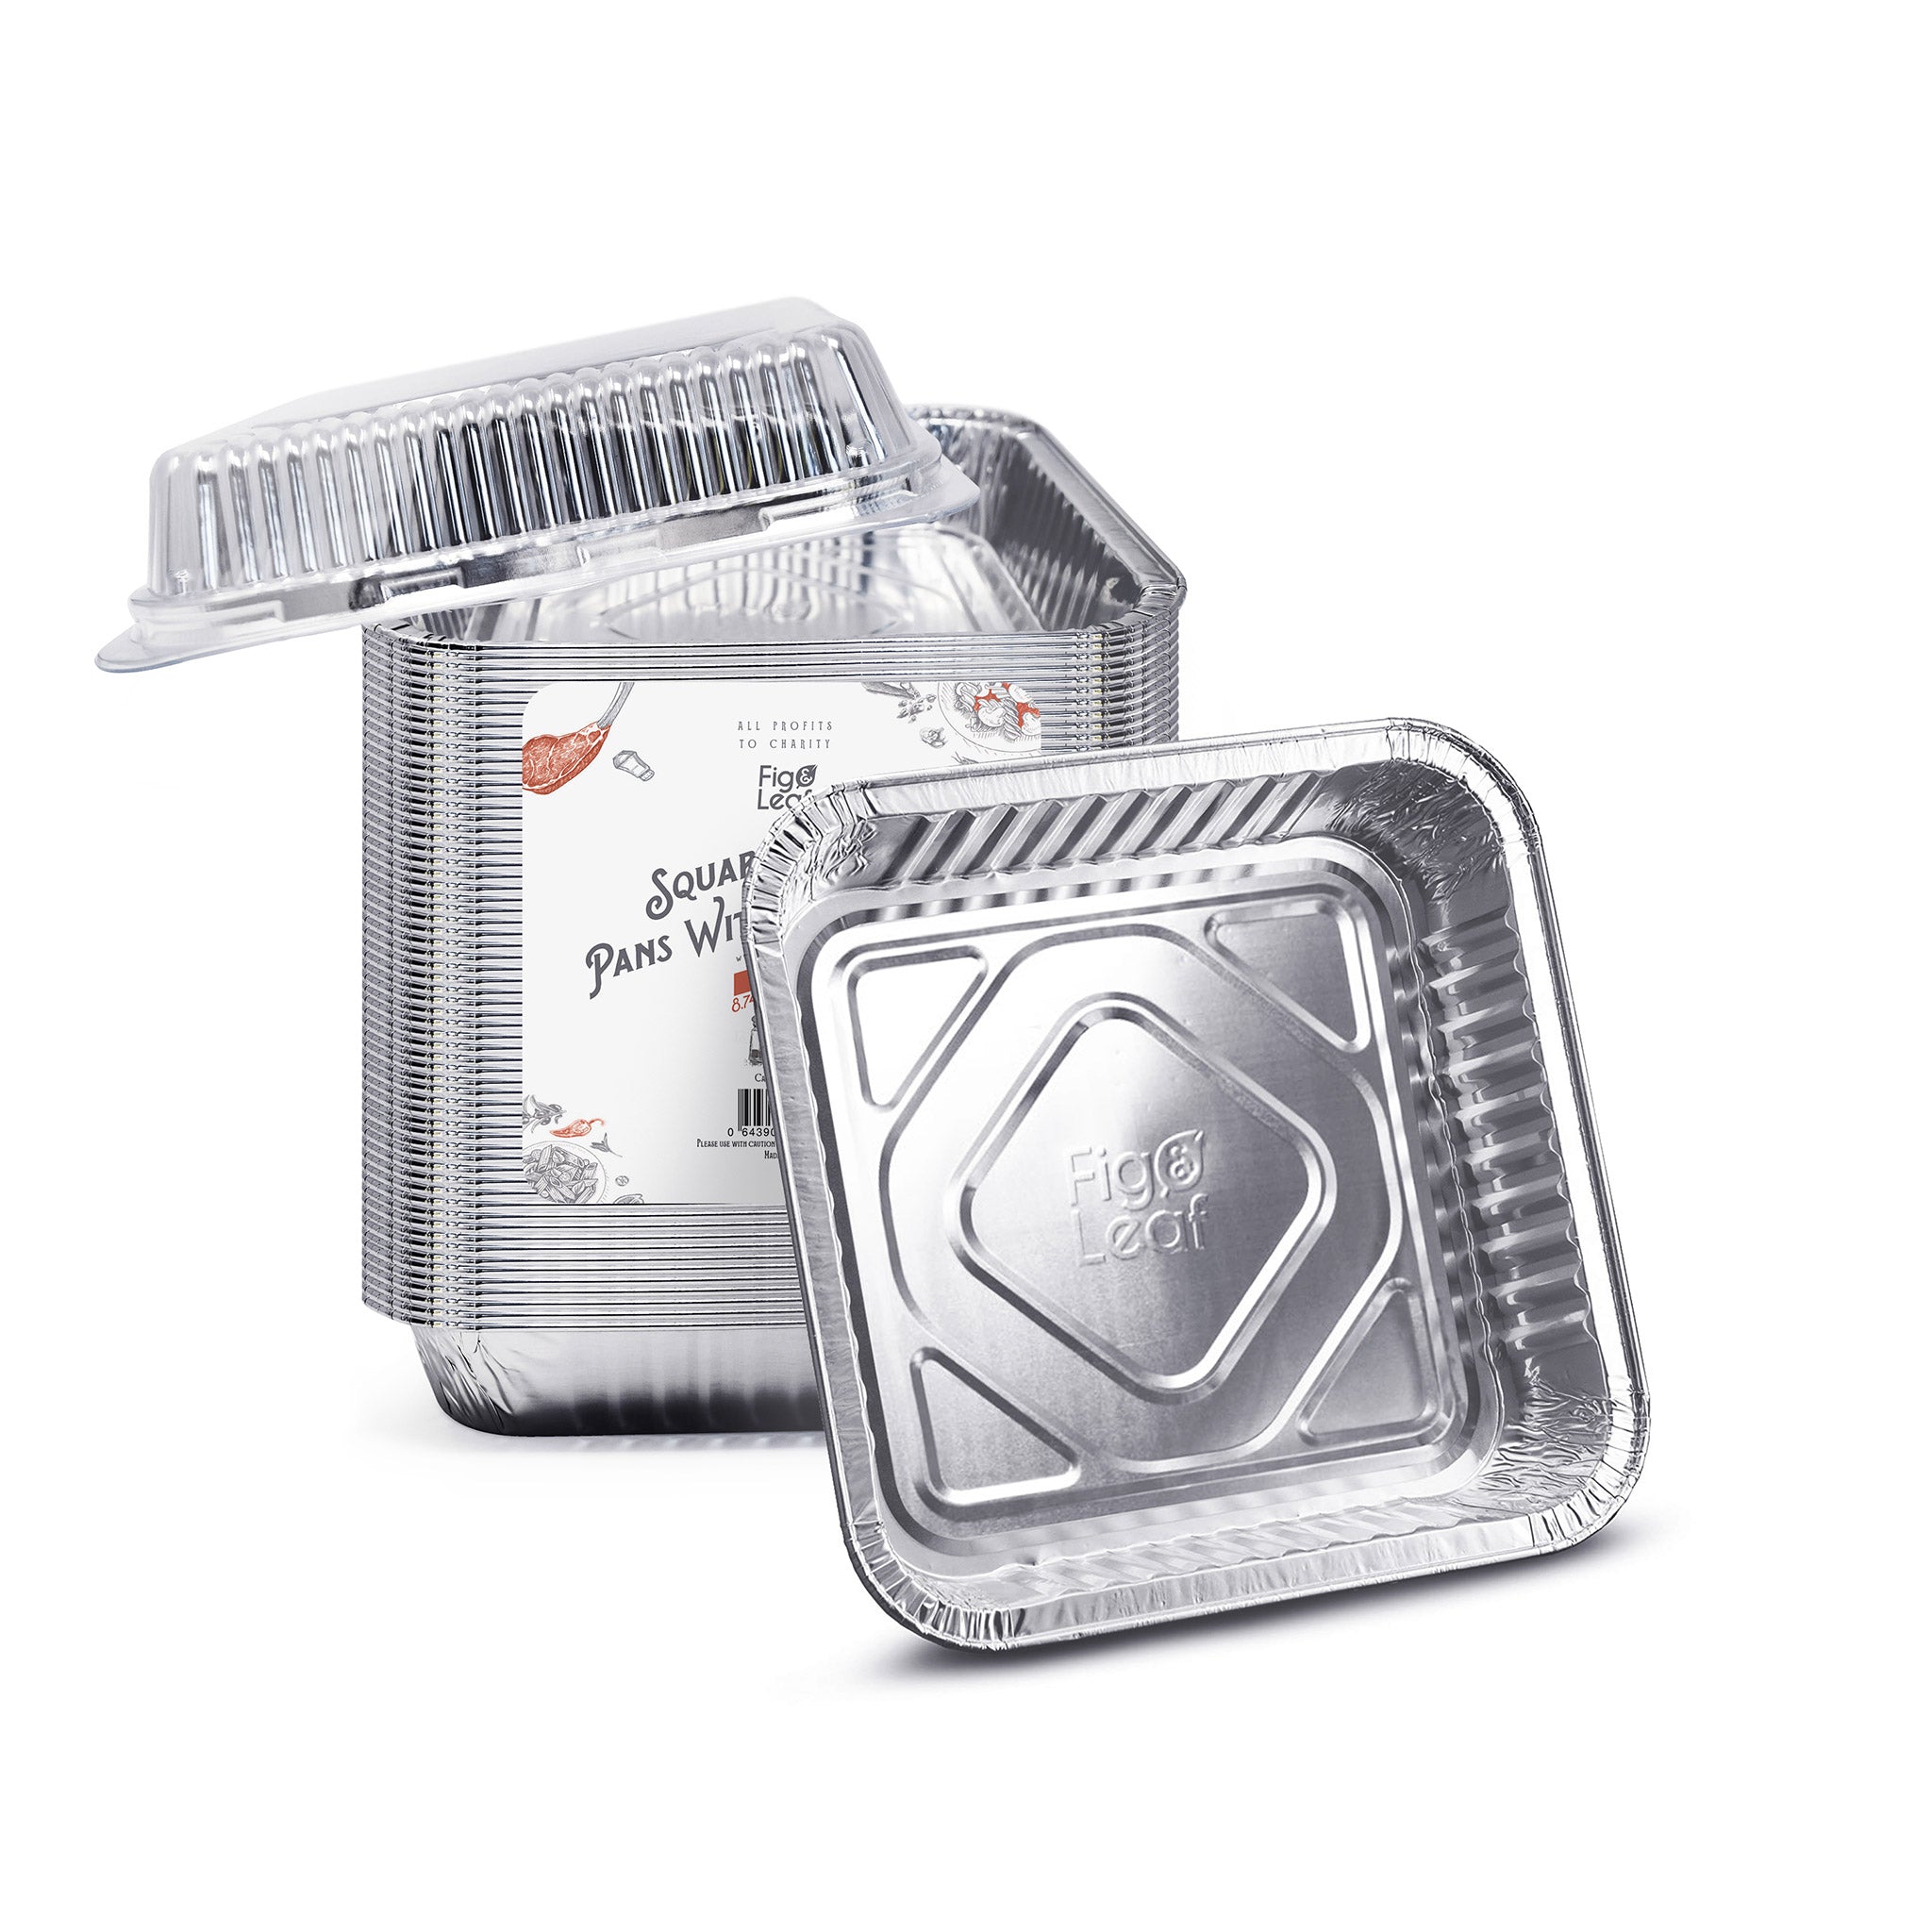  8x8 Disposable Aluminum Pans With Lids - 100 Pack Foil